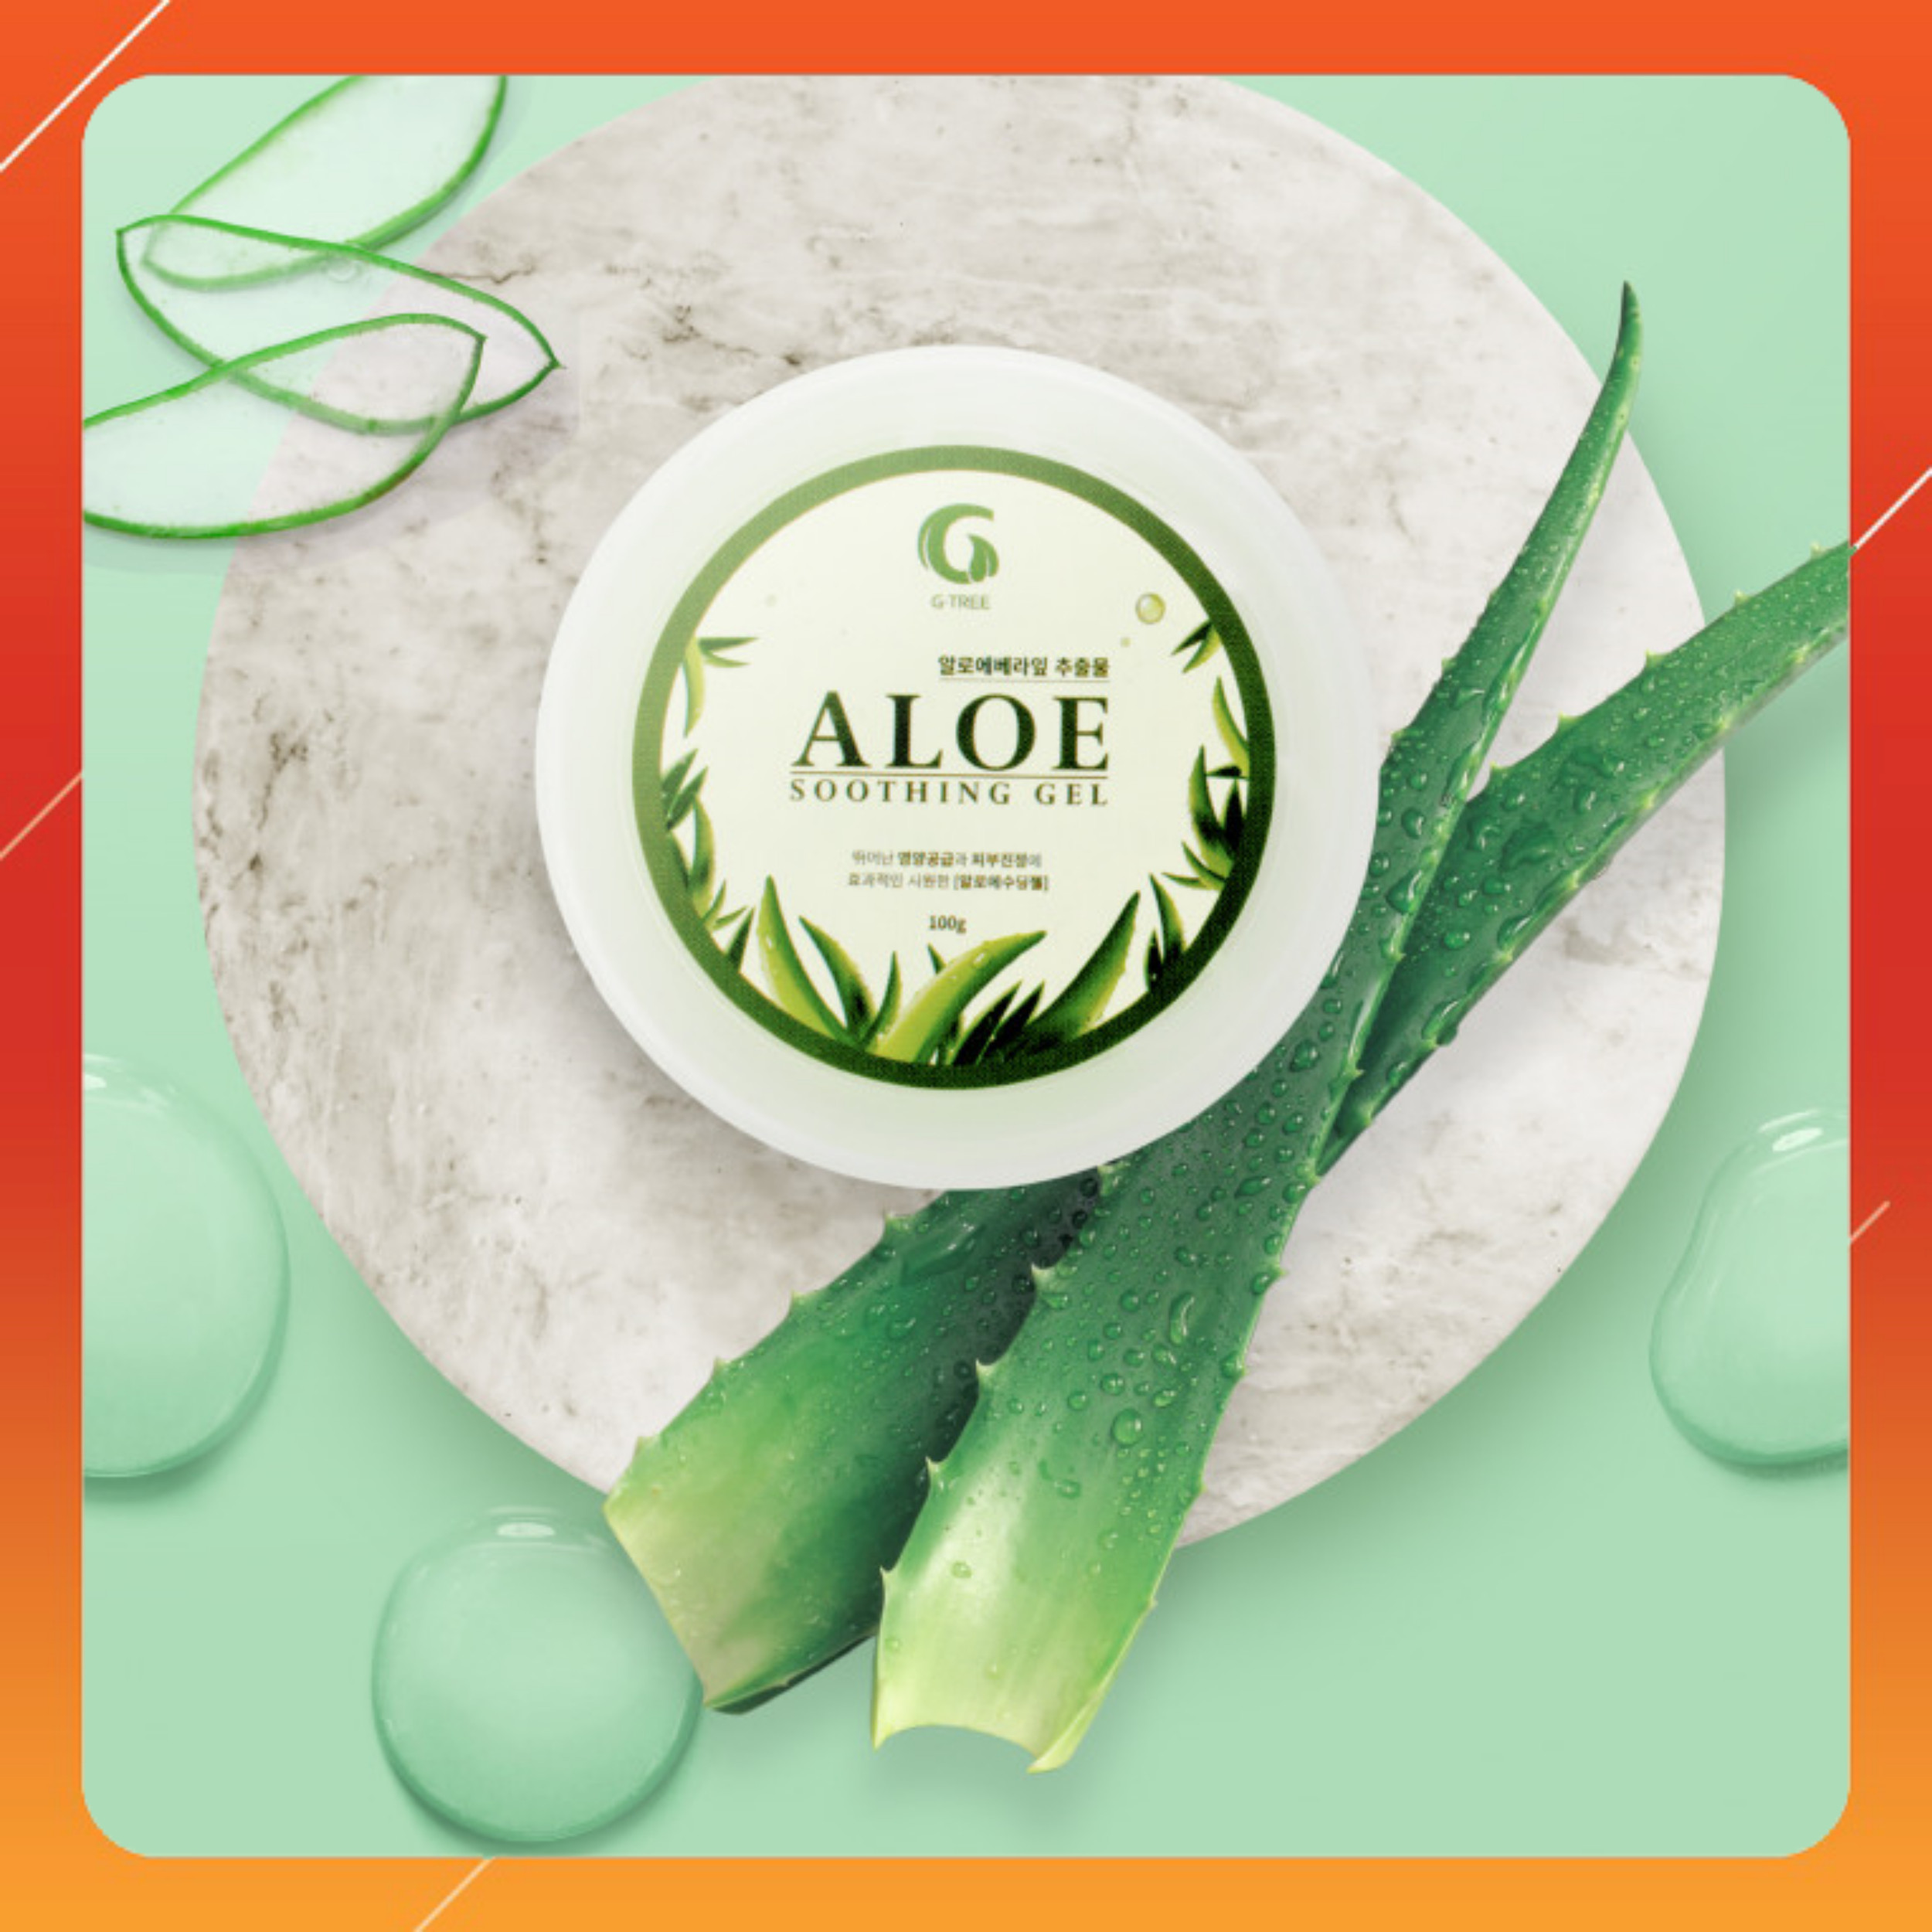 Combo 3 Gel Nha đam G-TREE nhập khẩu Hàn Quốc - Aloe Soothing Gel - 100g/hủ